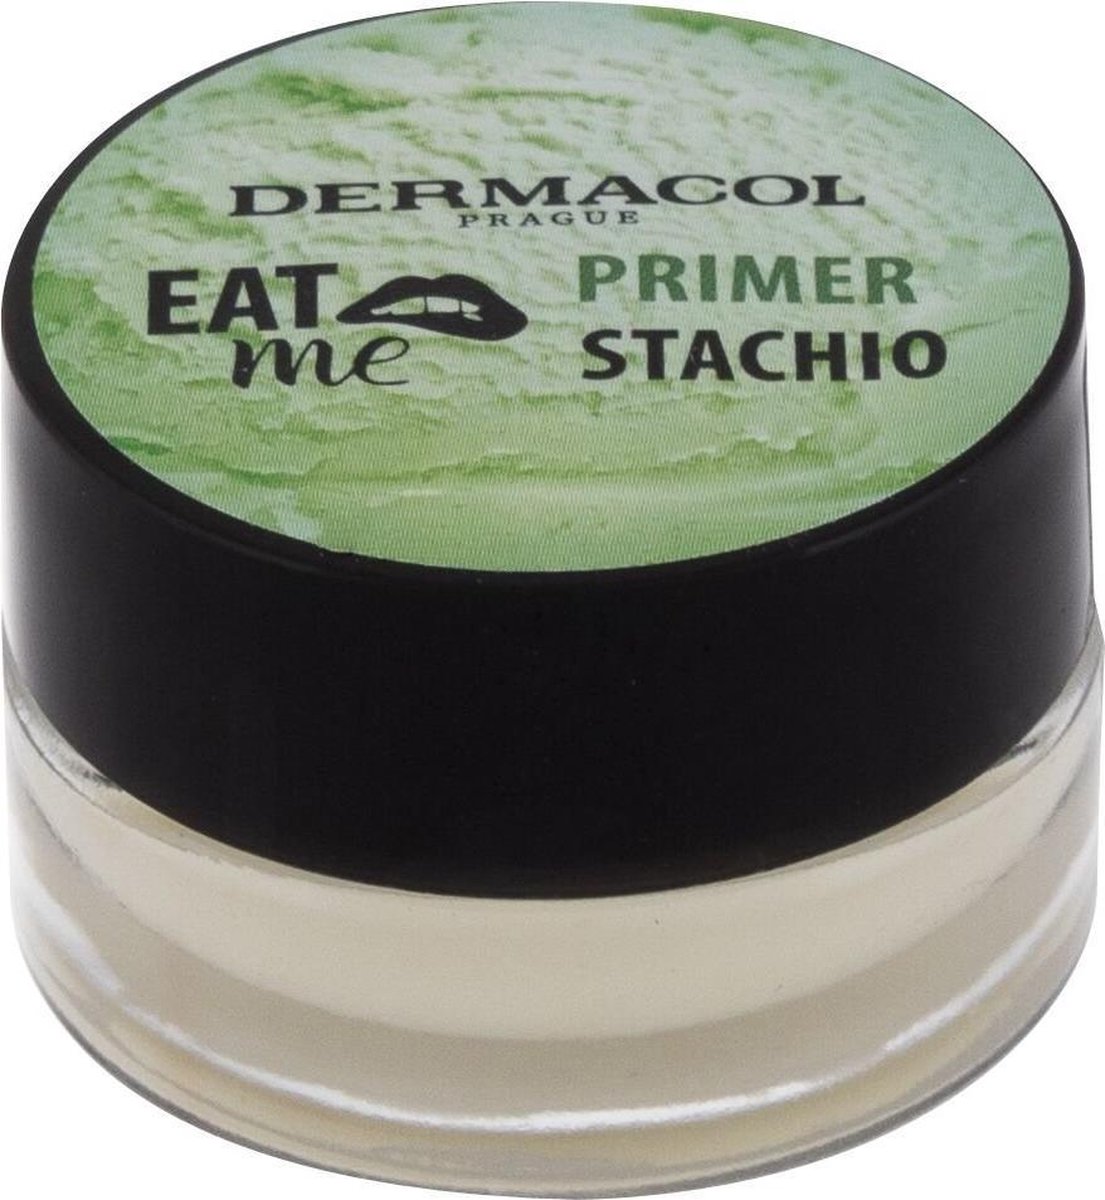 Dermacol - Eat Me Primer Stachio - Pistachio Base